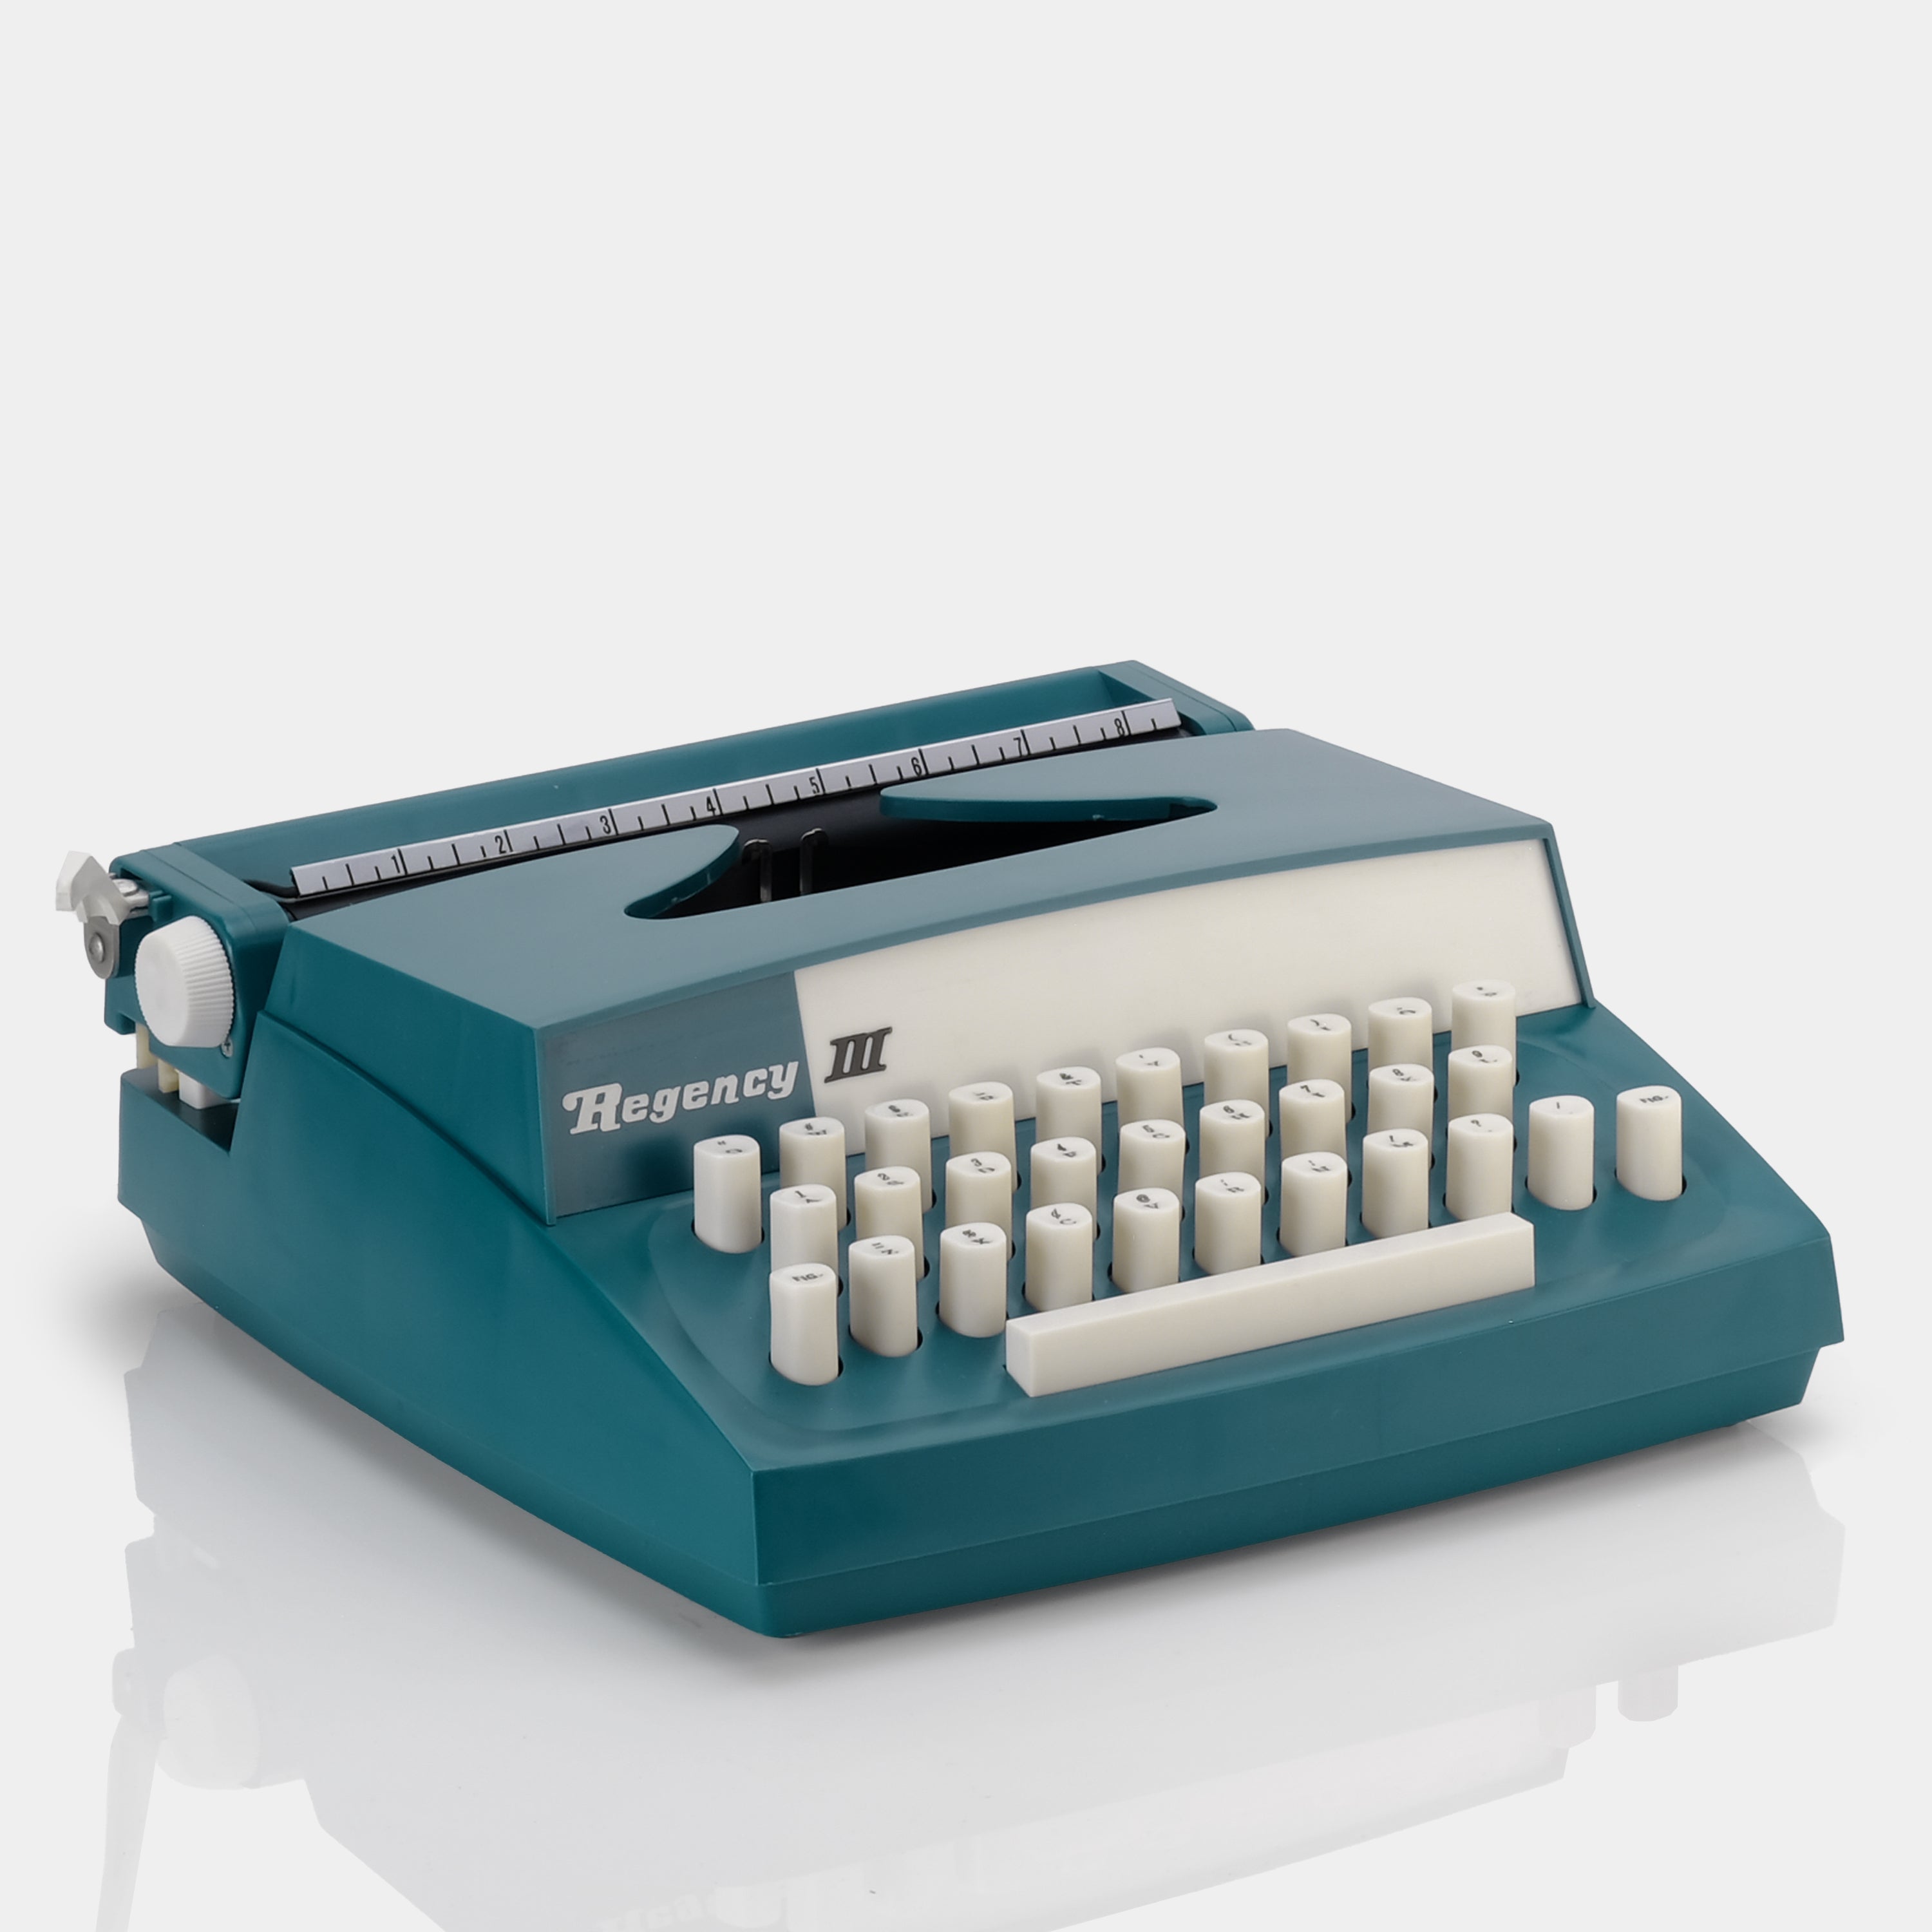 Regency III Teal Manual Typewriter